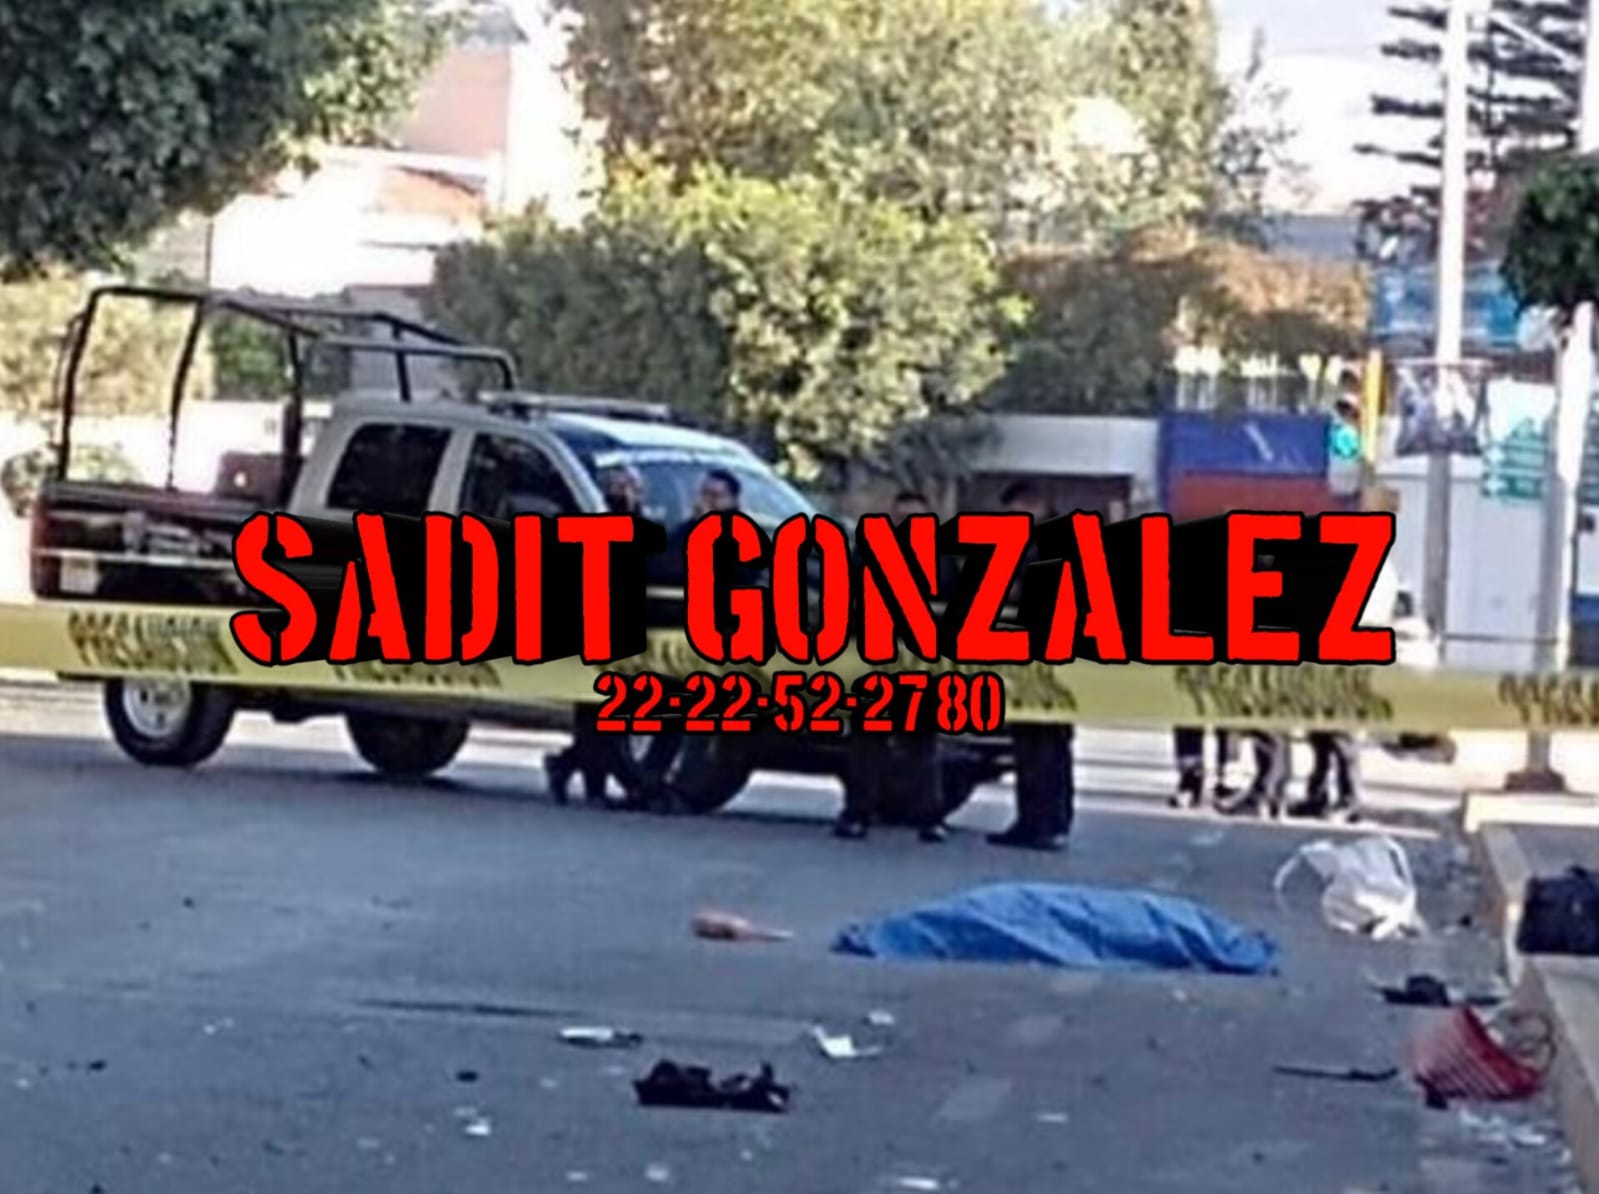 Trágica muerte de una mujer arrollada y arrastrada por vehículo en Tehuacán